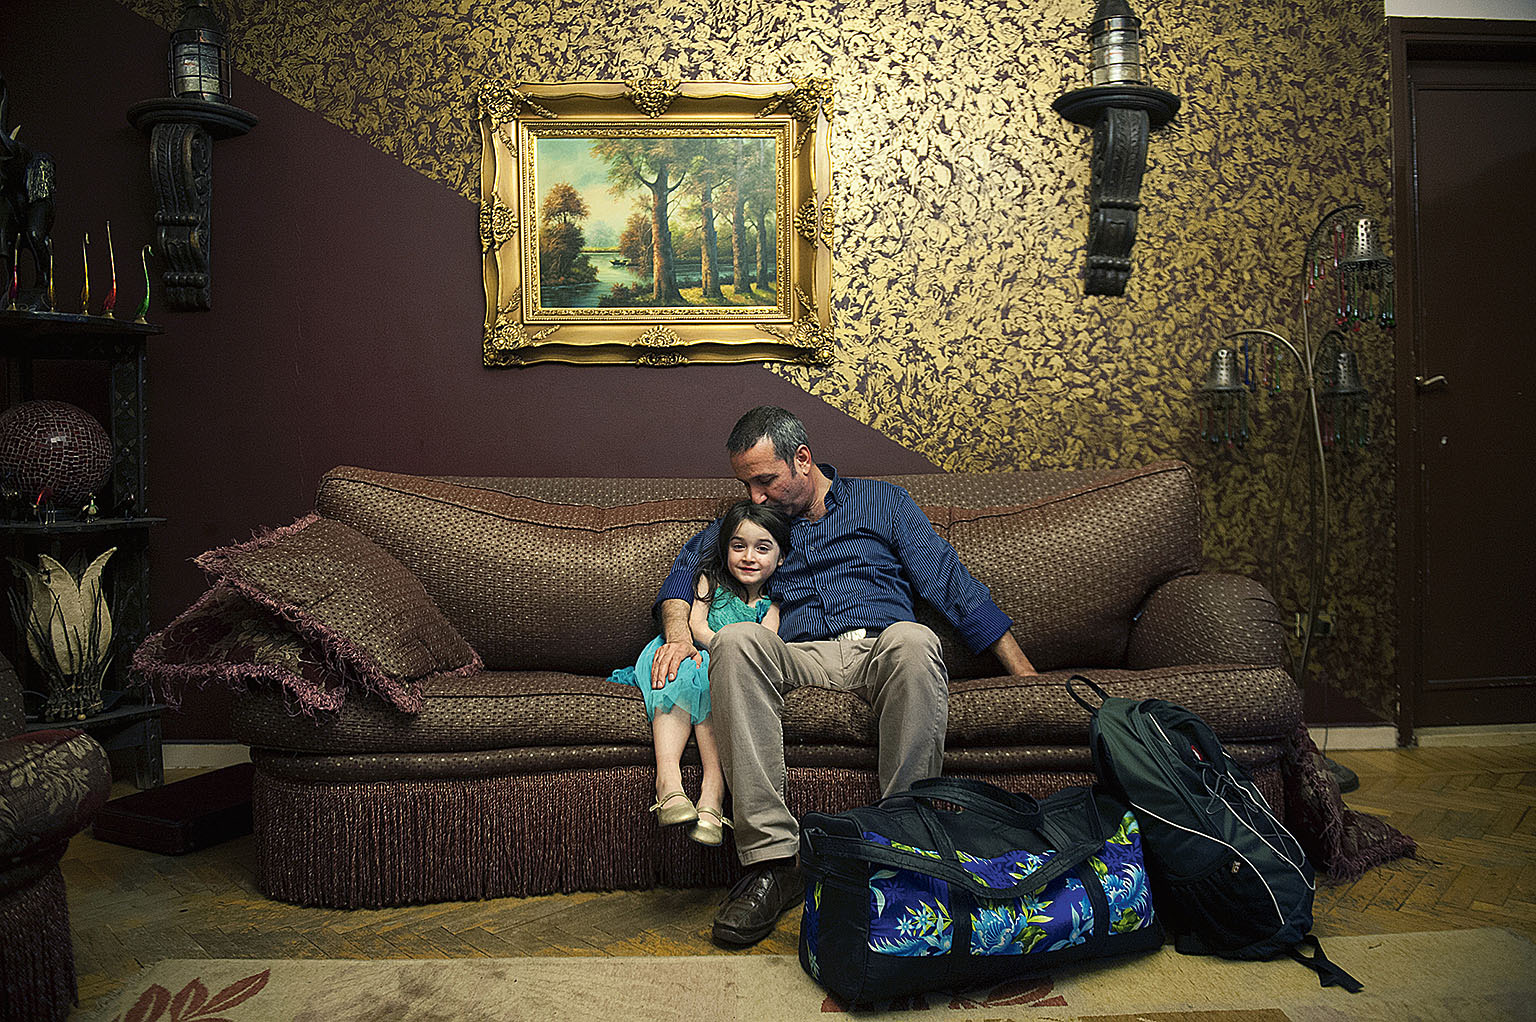 Noc předtím, než opustí rodinu, se Amar loučí s dcerkou v jejich káhirském bytě.